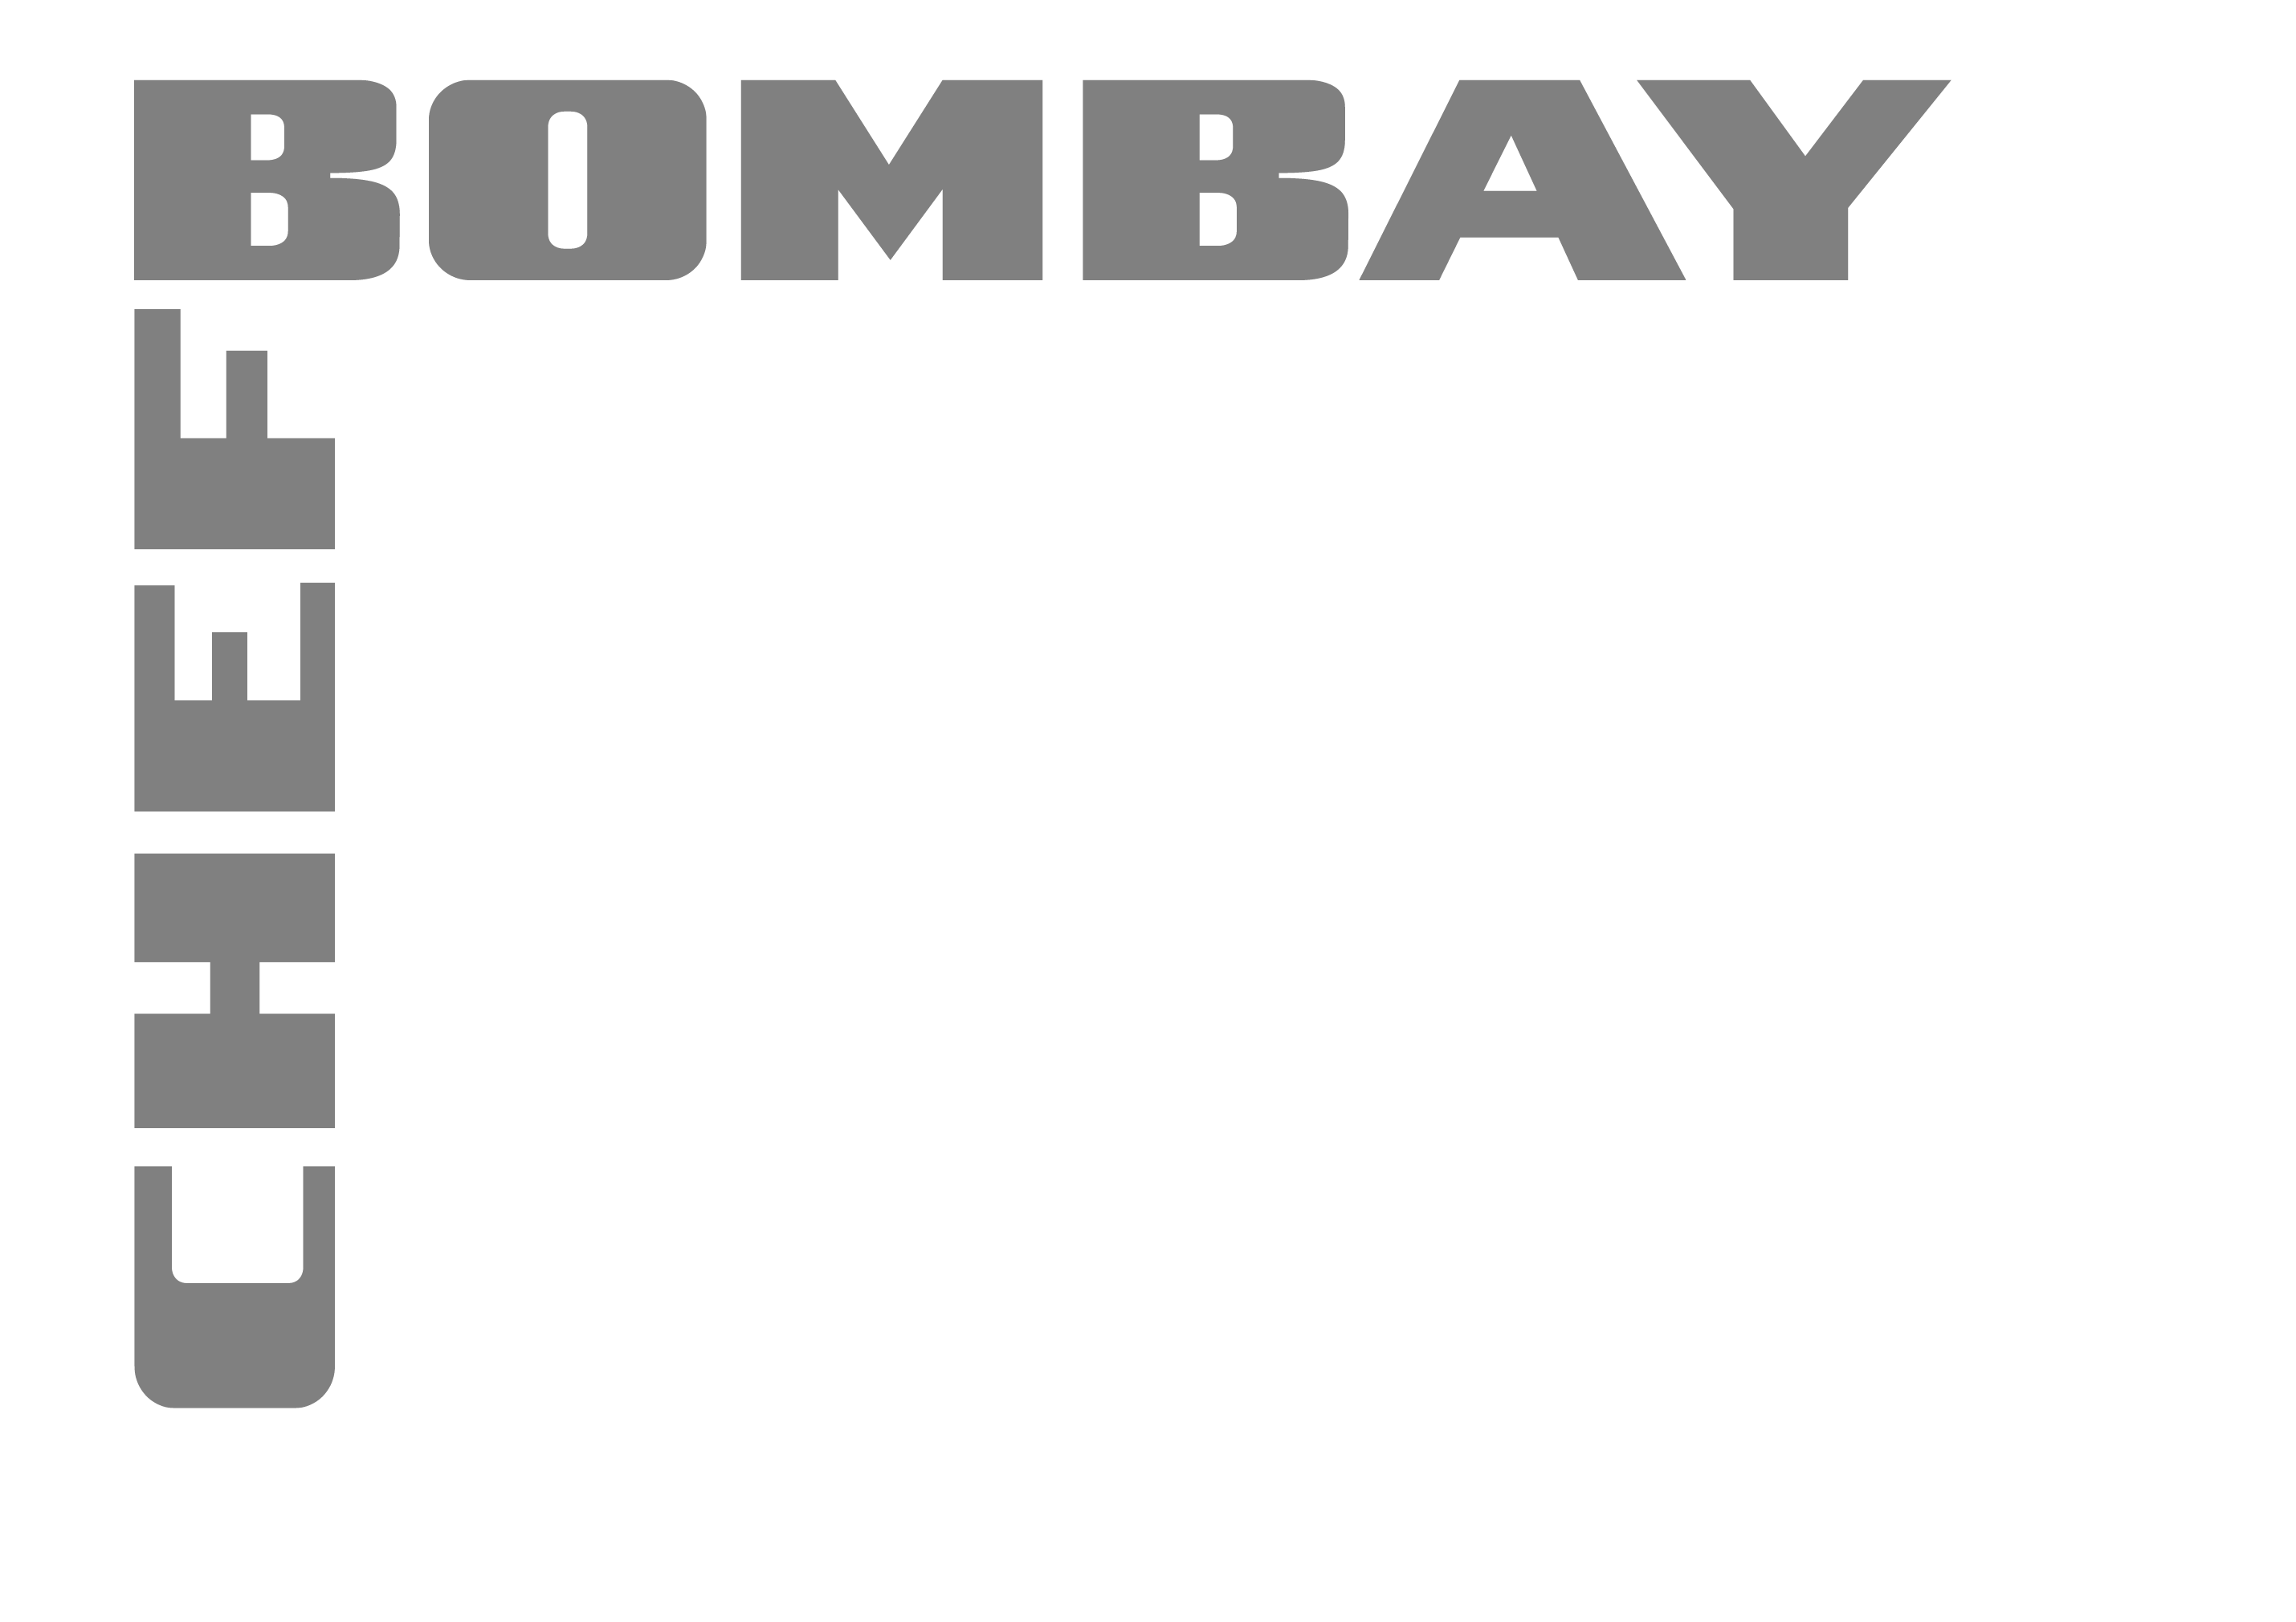 Chef Bombay, 